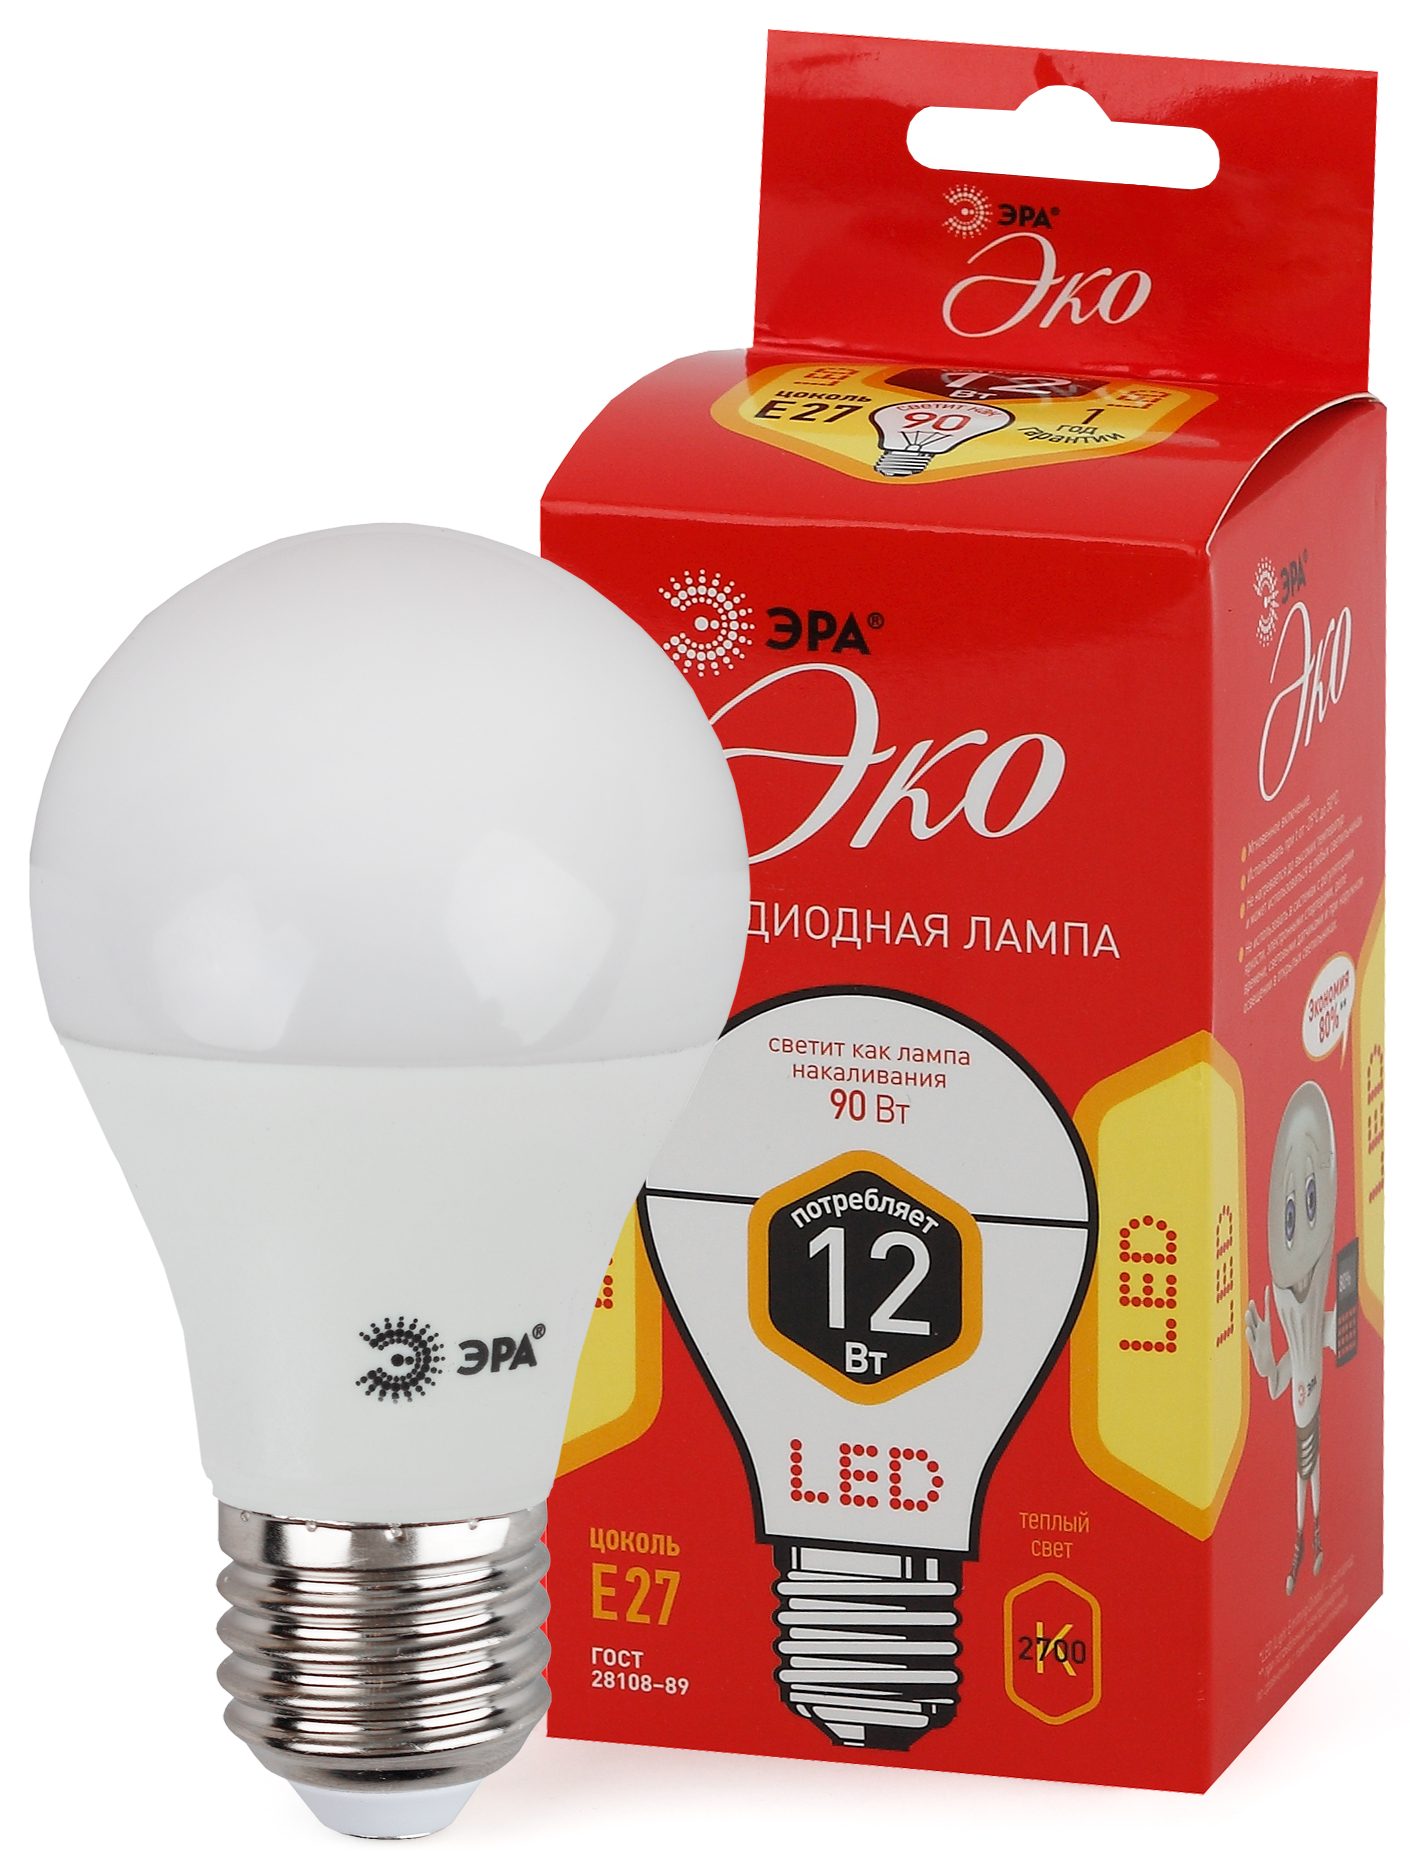 ECO LED A60-12W-827-E27 ЭРА (диод, груша, 12Вт, тепл, E27) (10/100/1500)